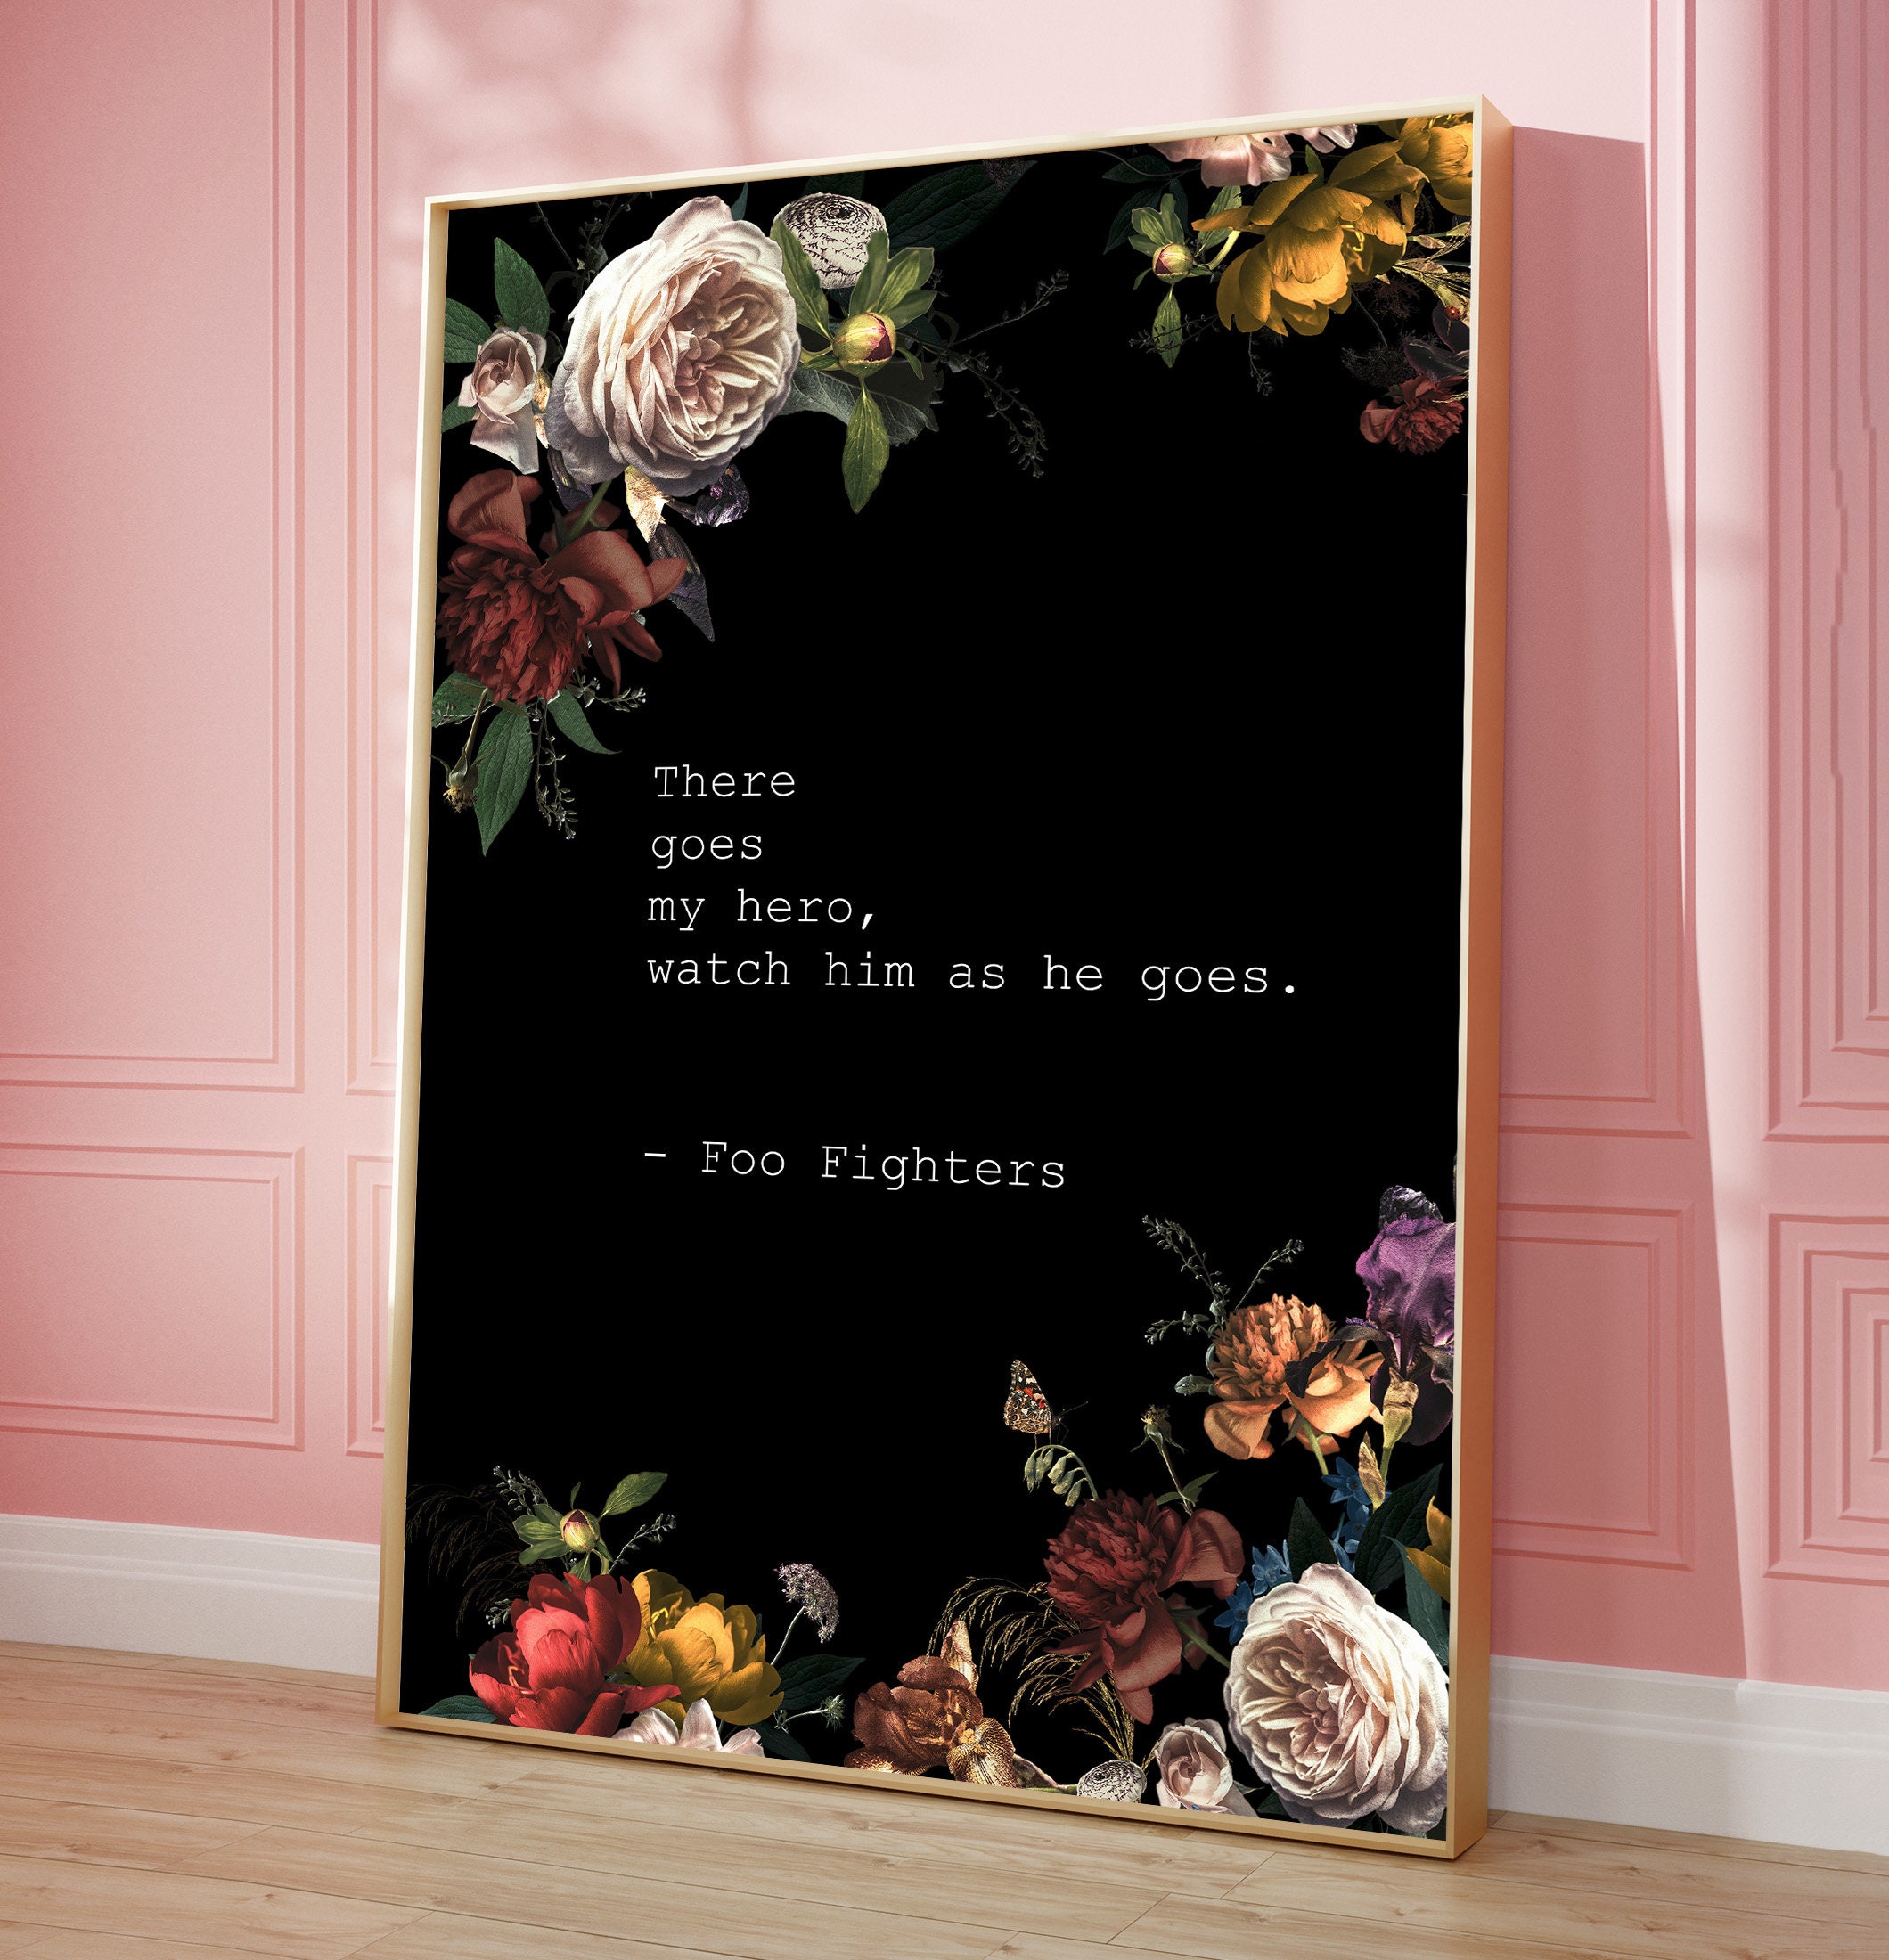 foofighters #hero #lyrics  Foo fighters lyrics quotes, Foo fighters  lyrics, Foo fighters tattoo lyrics